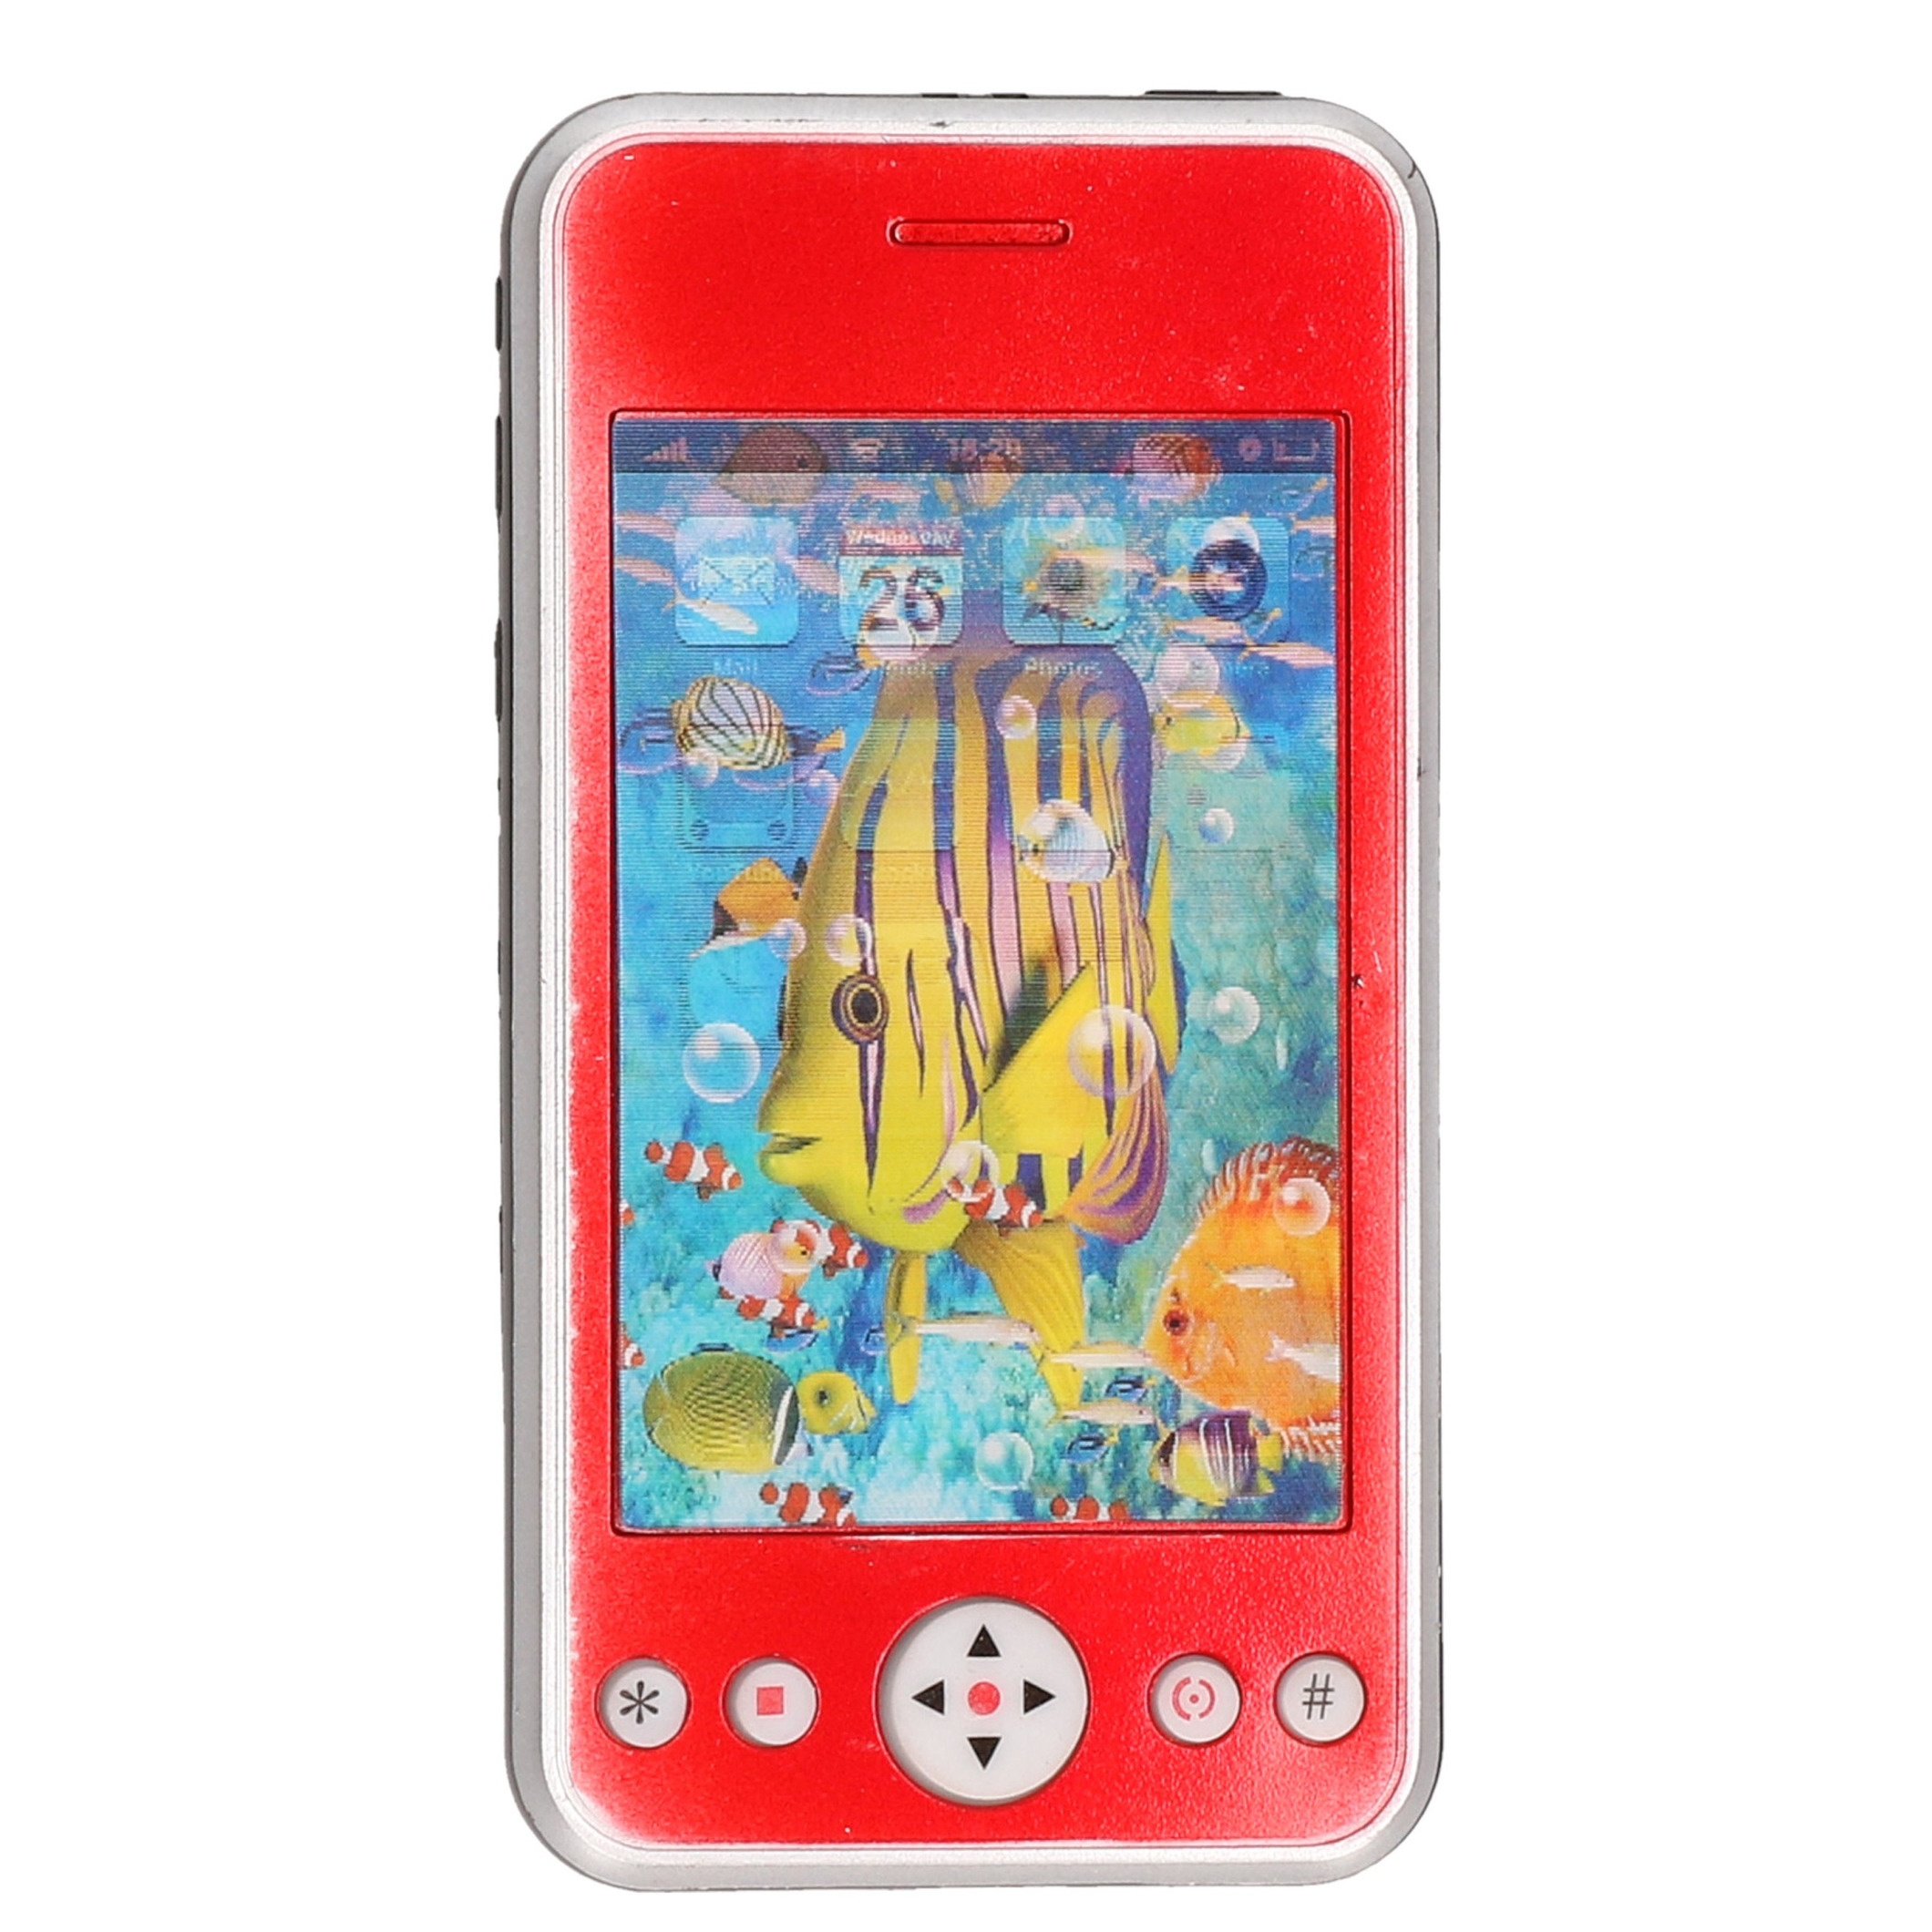 Speelgoed smartphone/mobiele telefoon rood met licht en geluid 11 cm -